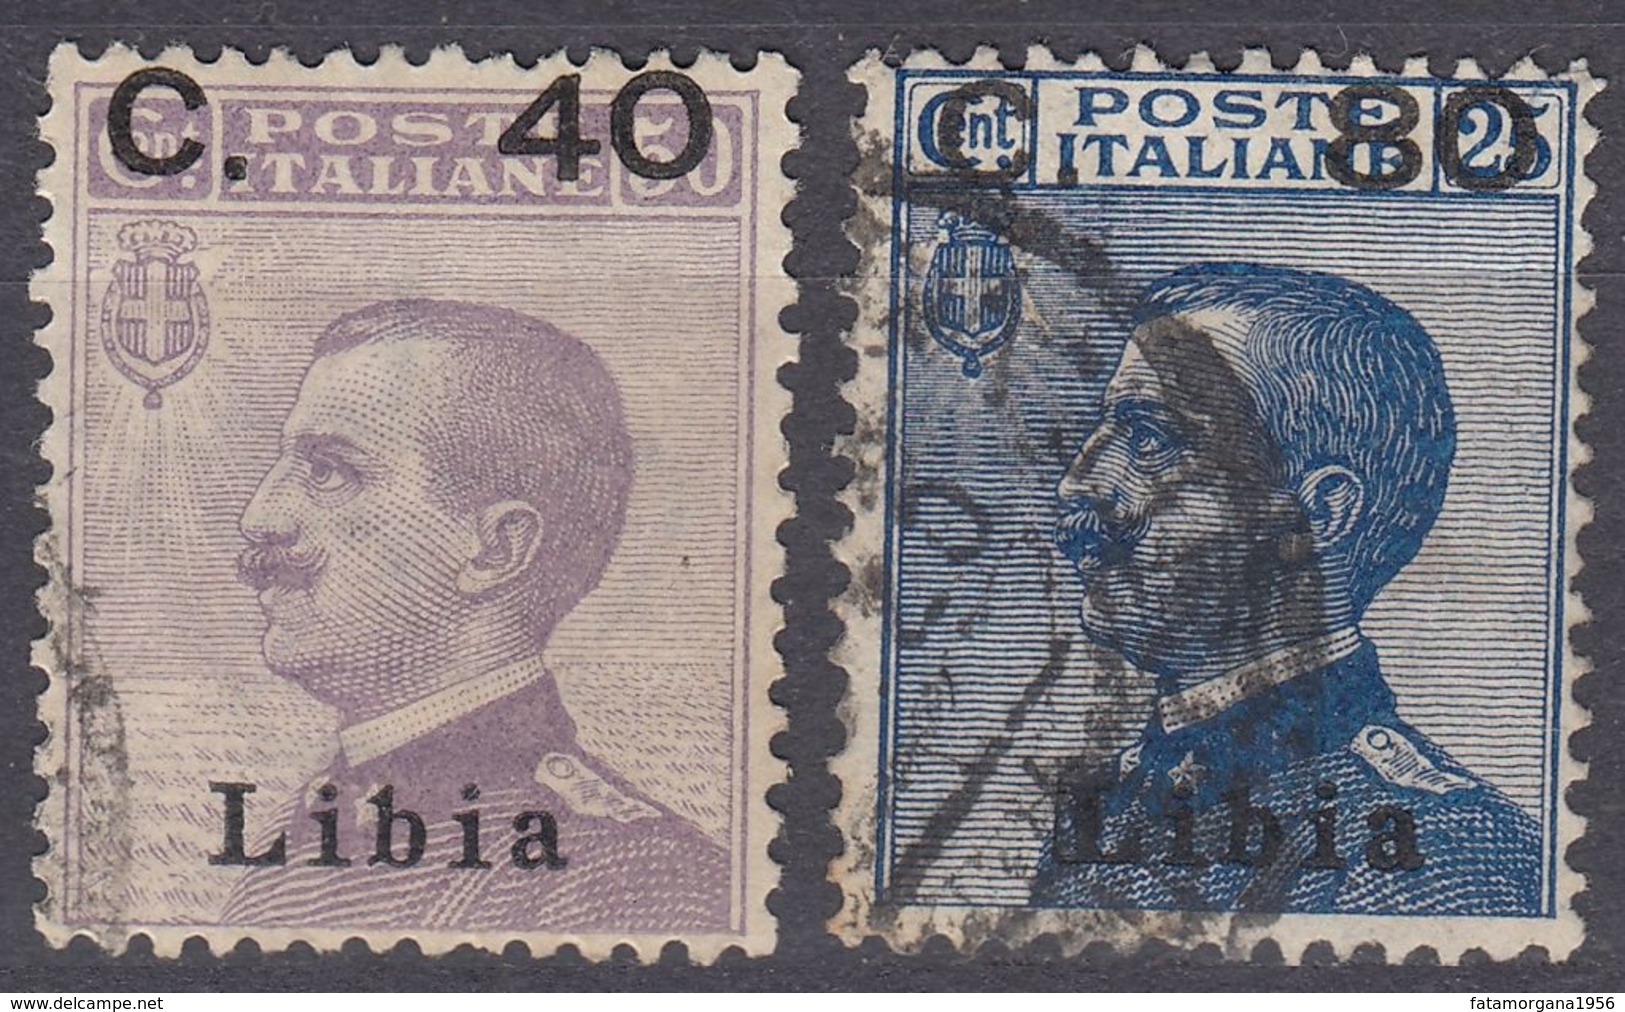 LIBIA (COLONIA ITALIANA) - 1922 - Serie Completa Di 2 Valori Usati: Yvert 38/39, Come Da Immagine. - Libyen